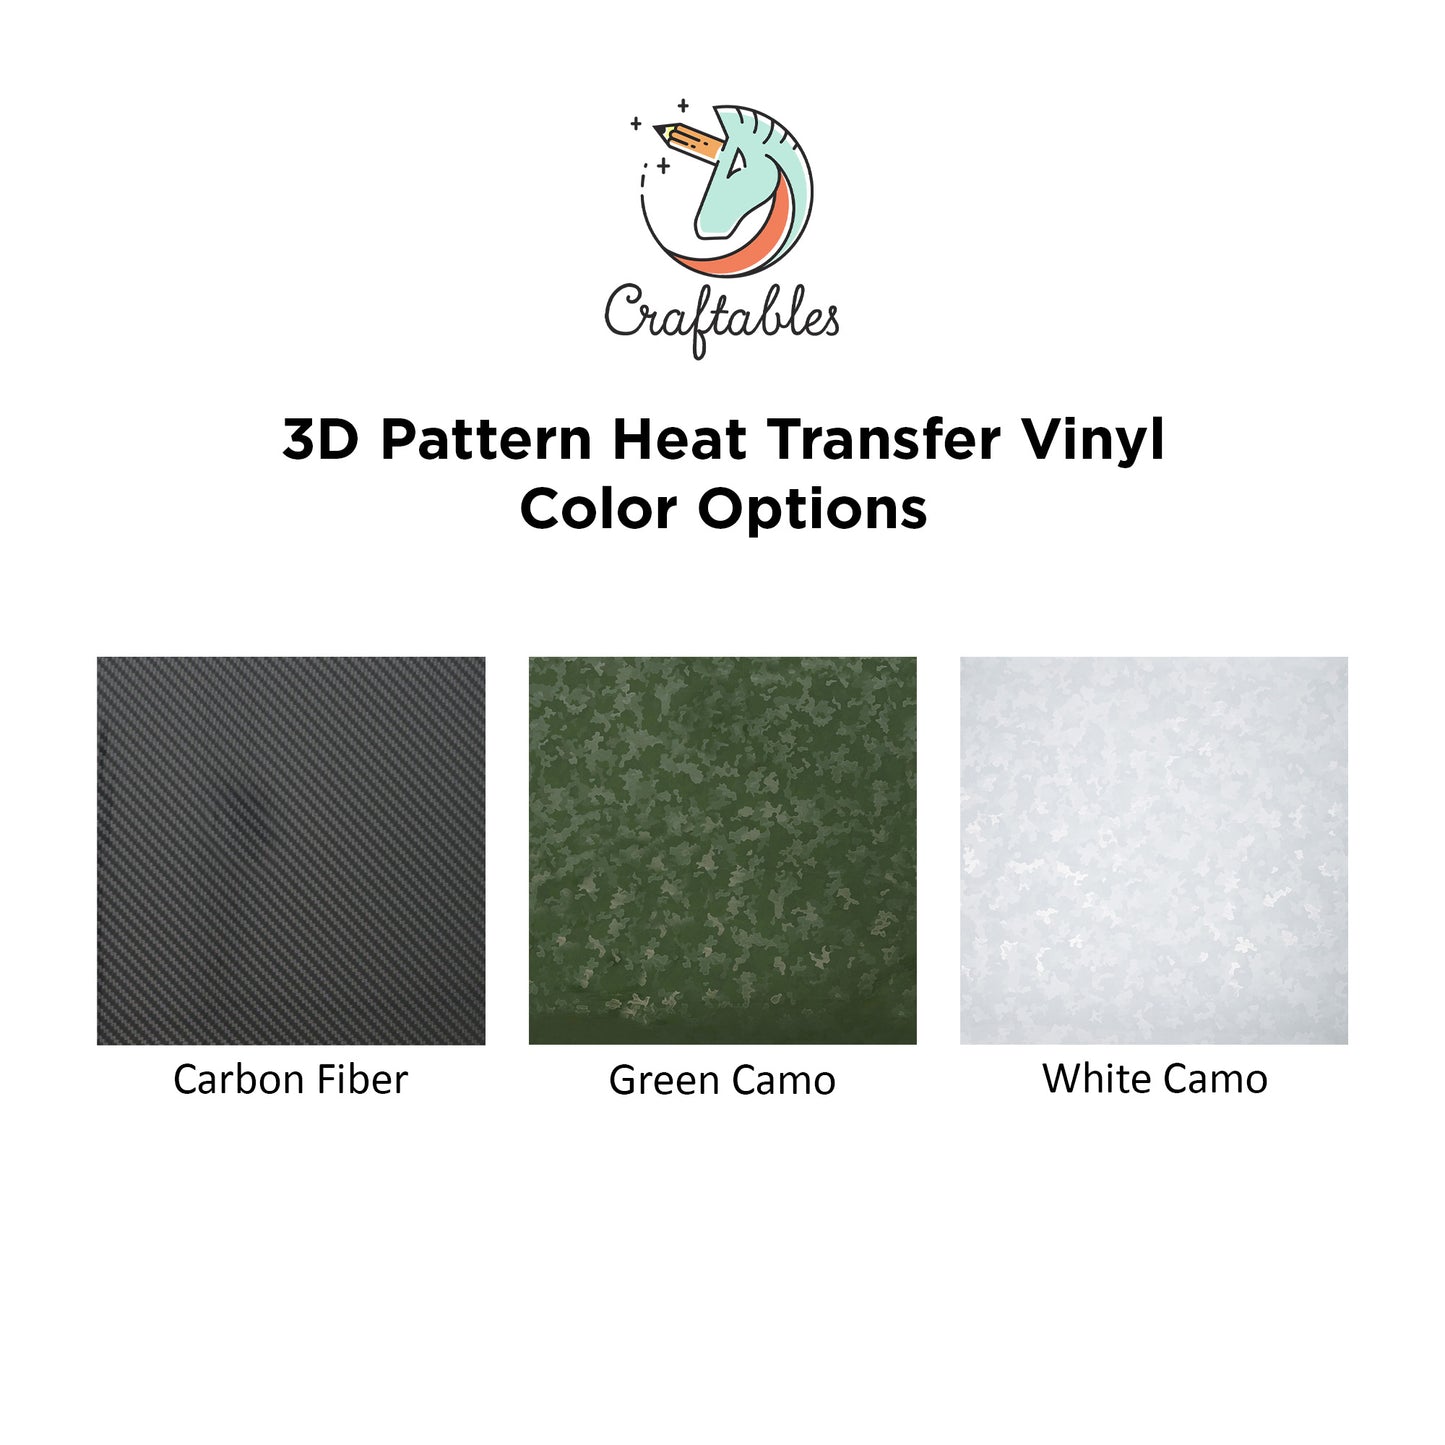 Carbon Fiber 3D Pattern Heat Transfer Vinyl Rolls By Craftables